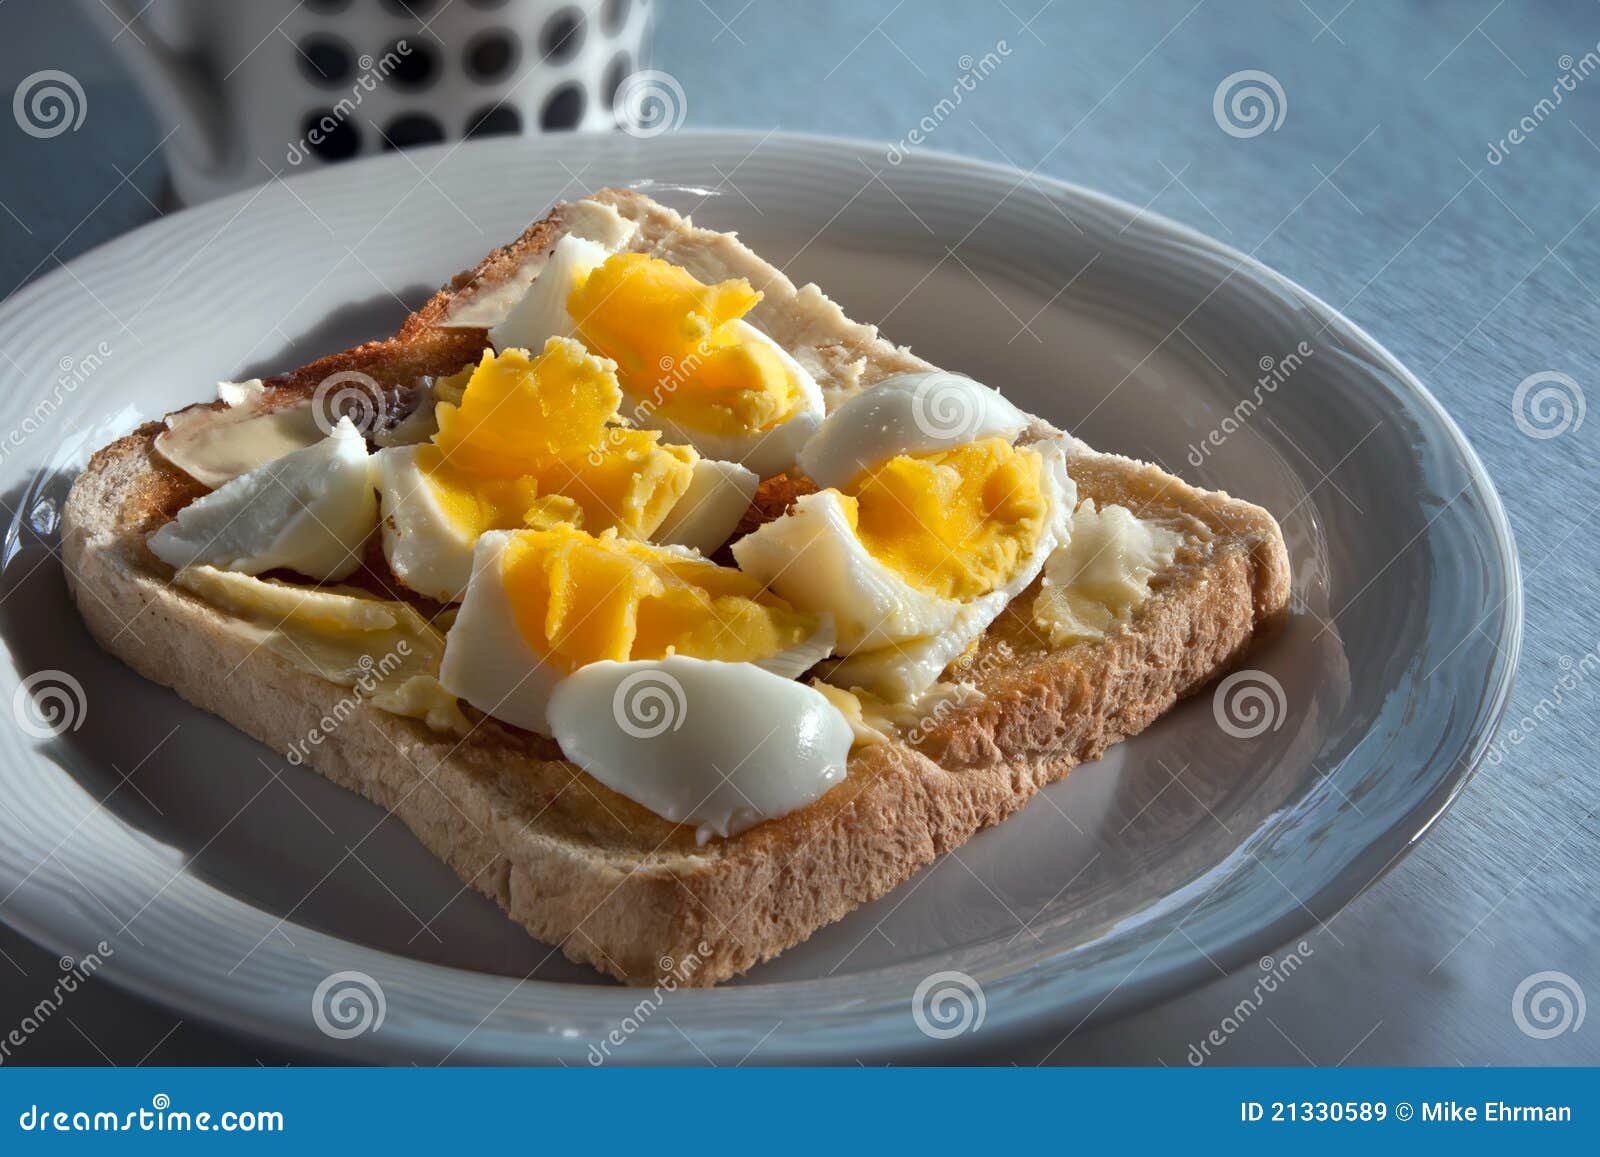 Il pasto sano della prima colazione di mattina ha bollito l'uovo su pane tostato con burro